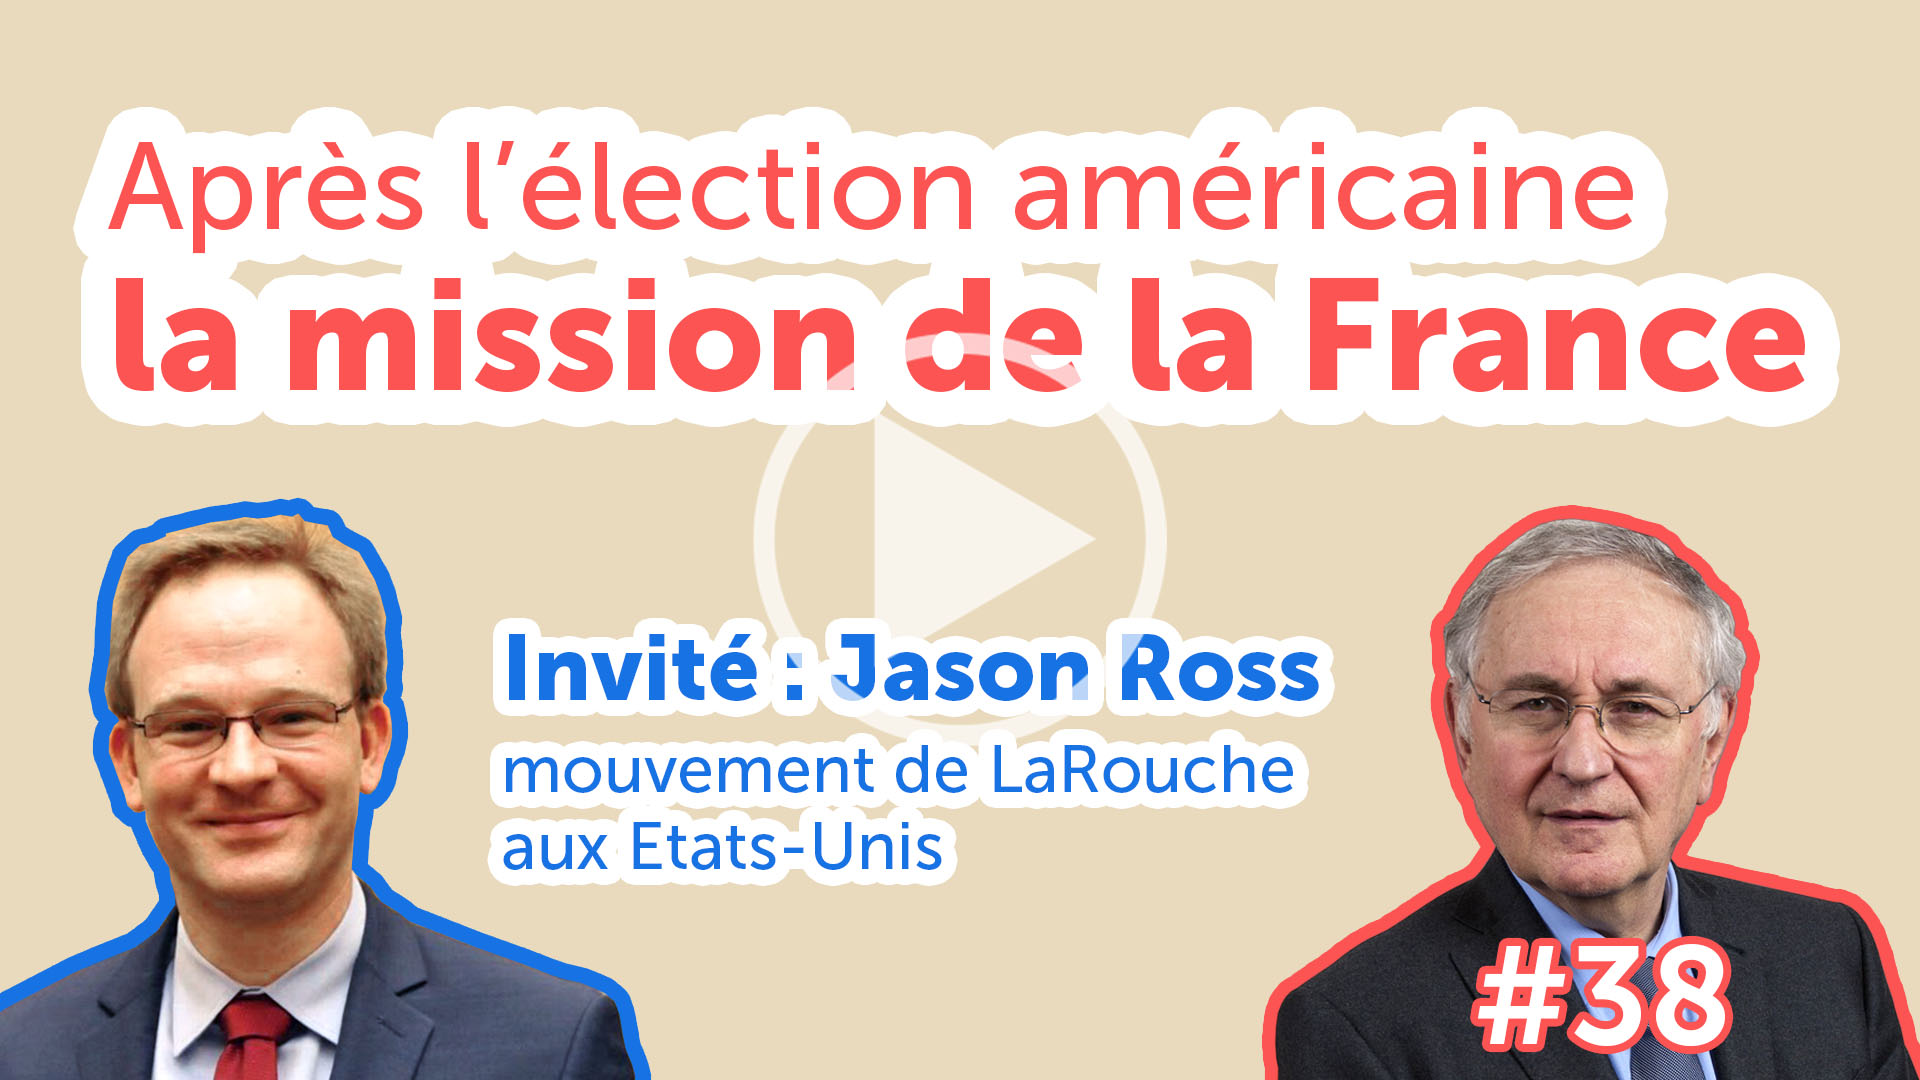 Après l’élection américaine, la mission de la France - EJC #38